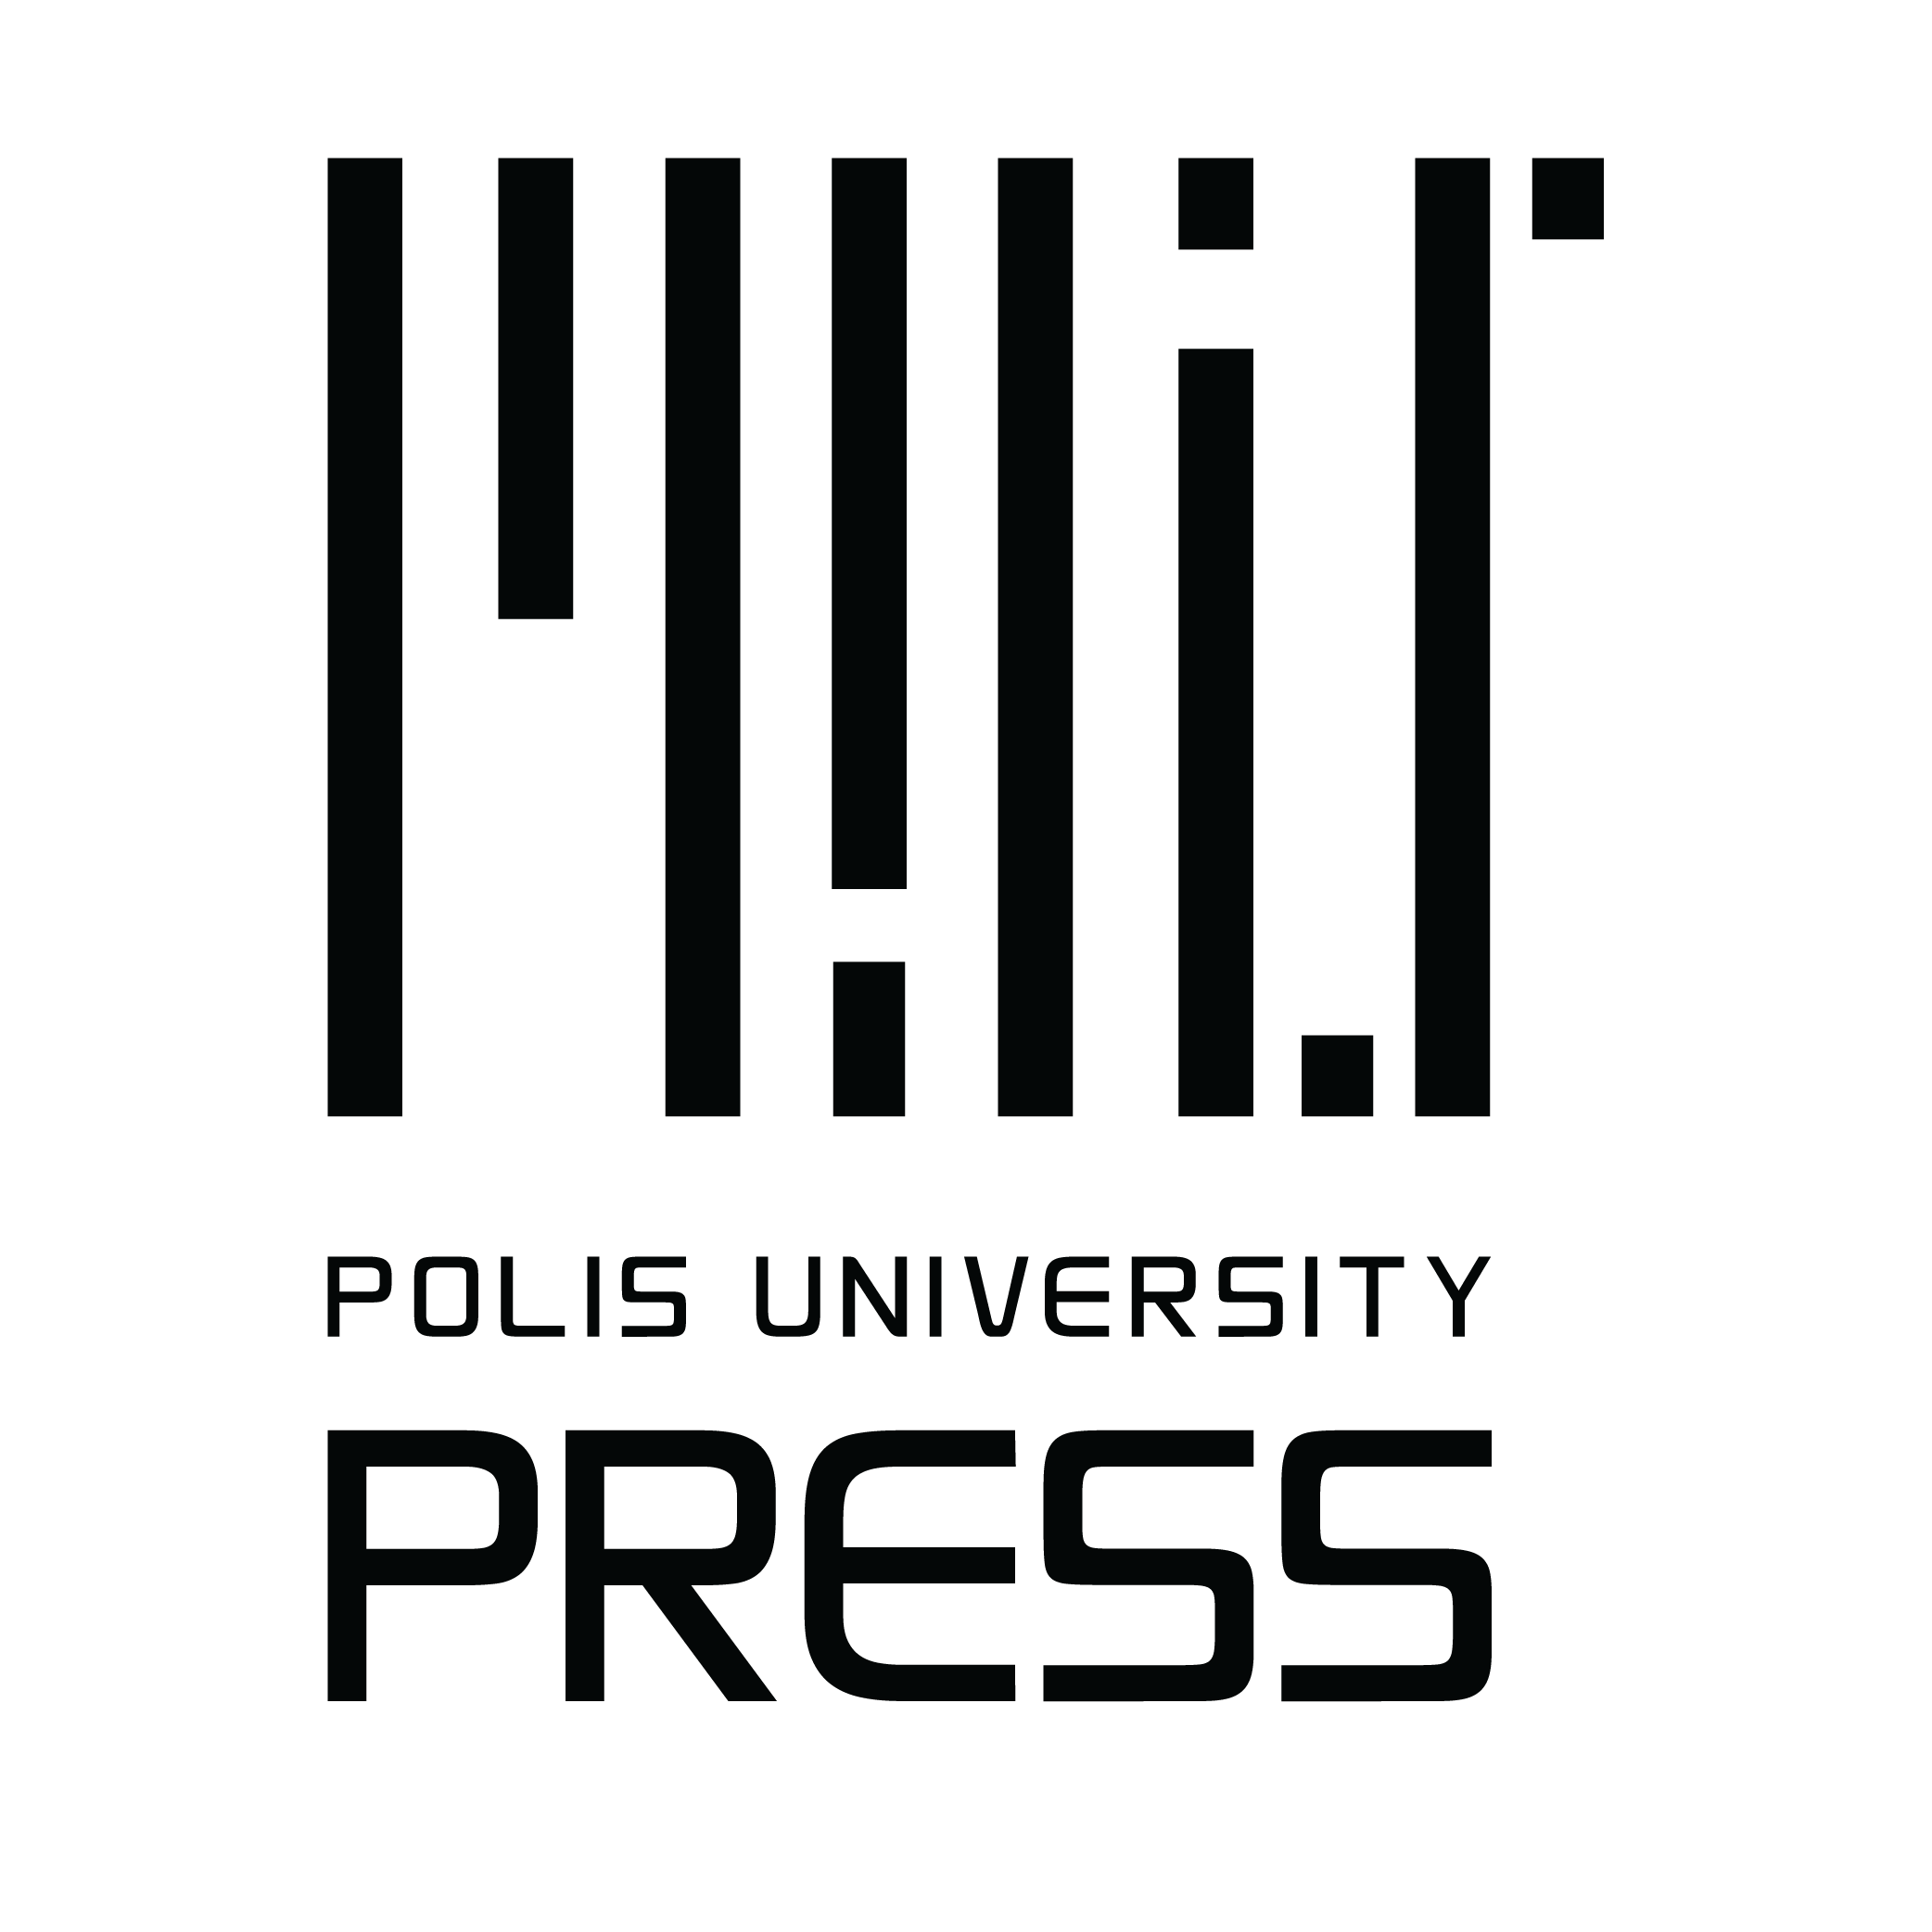 Polis_Press